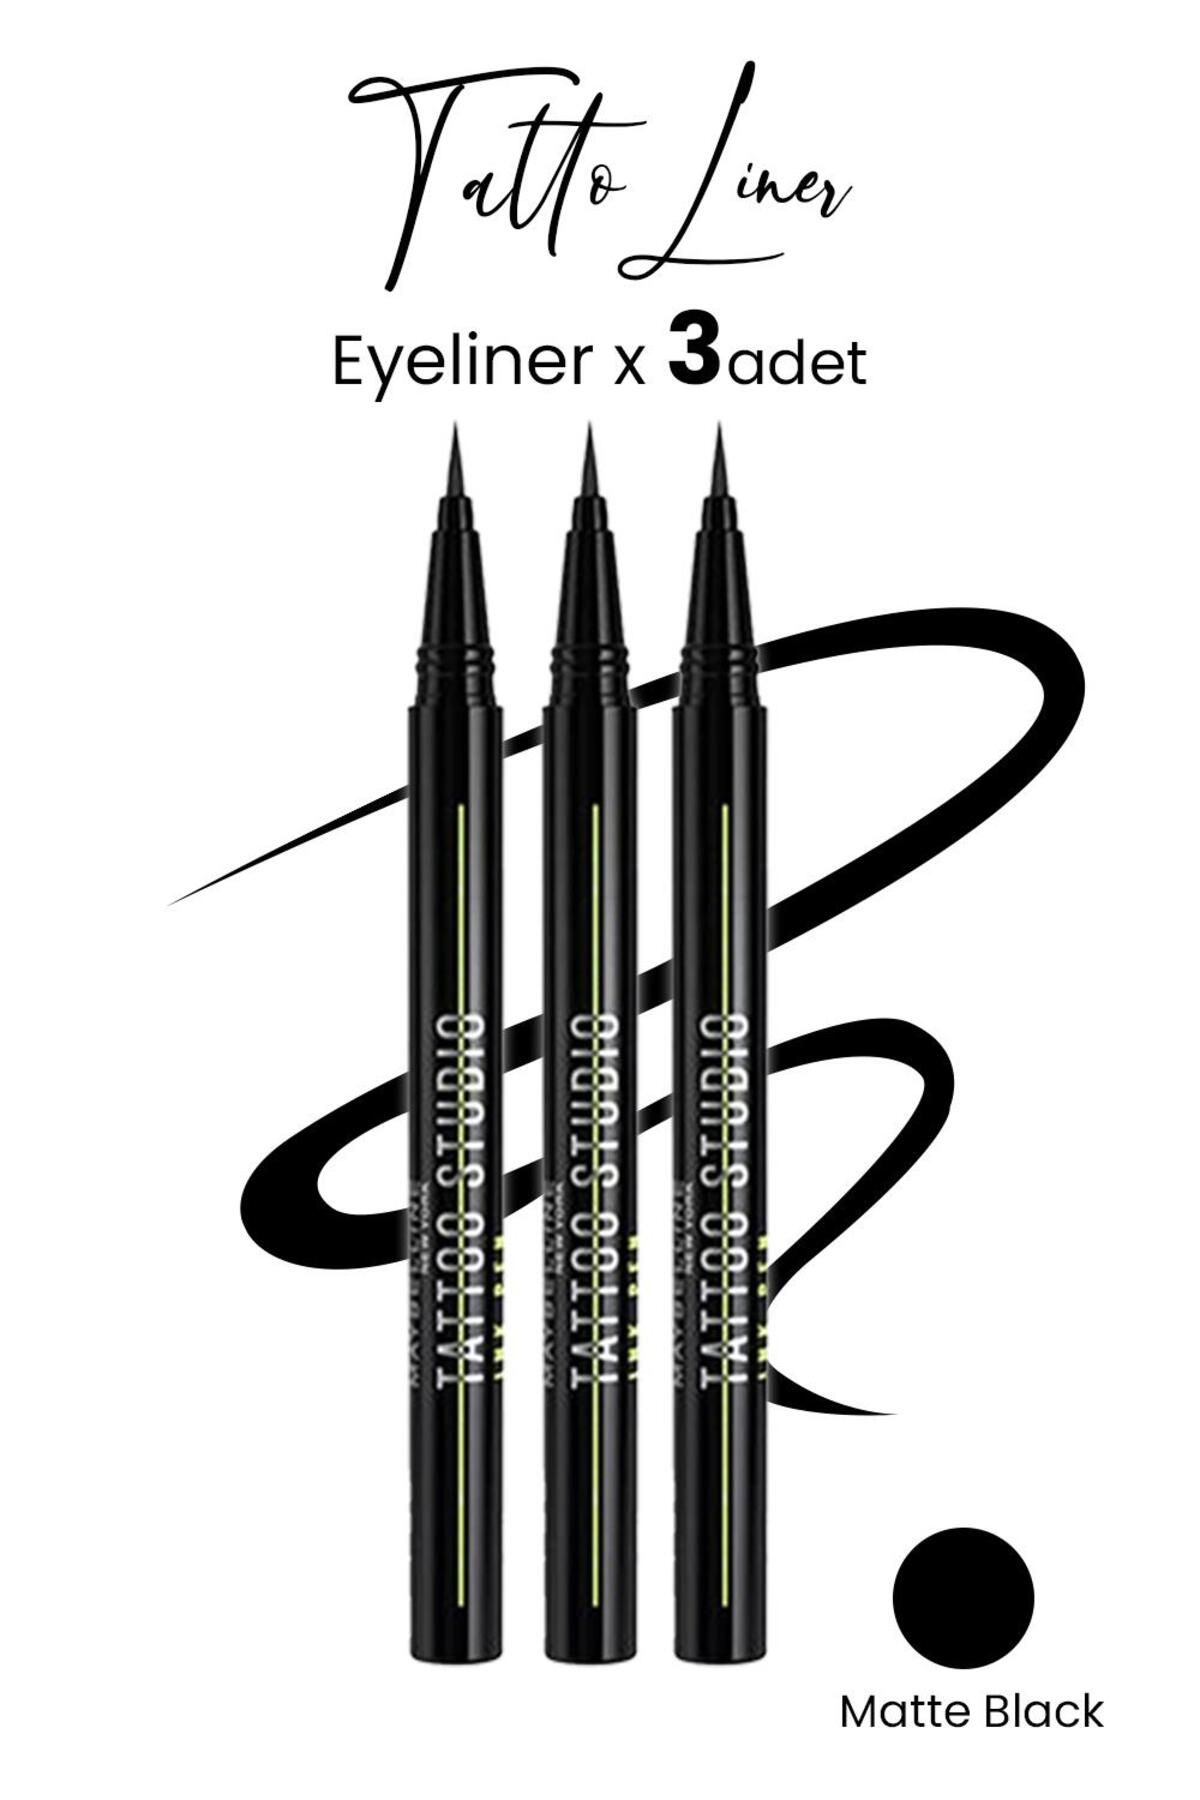 Maybelline New York Maybelline Tattoo Liner Ink Pen Eyeliner - Matte Black X 3 Adet